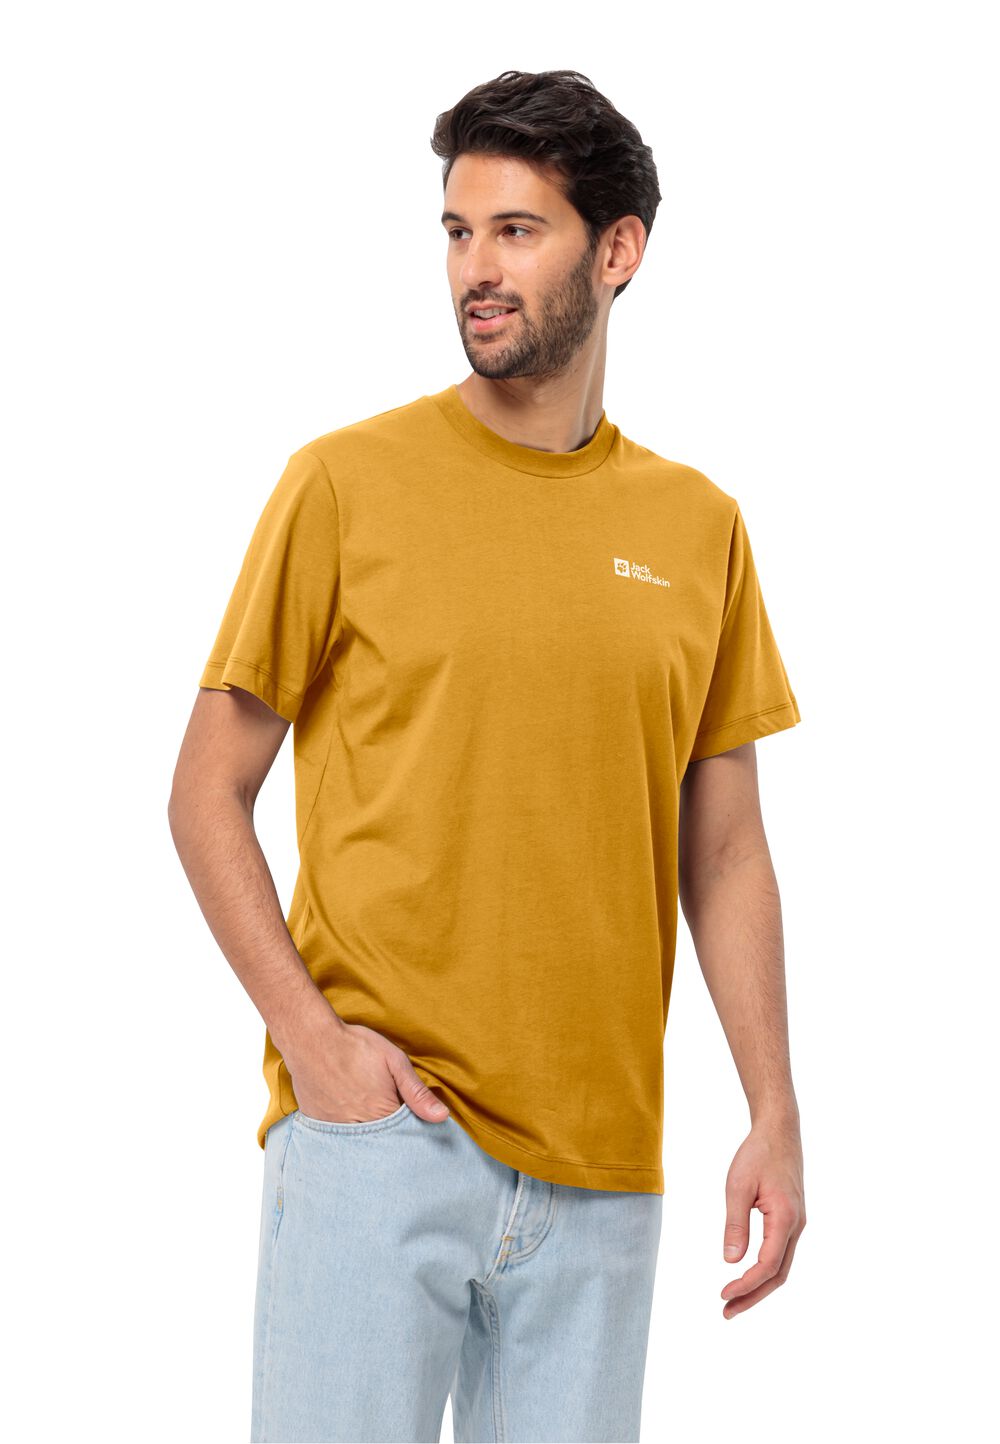 Jack Wolfskin Essential T-Shirt Men Heren T-shirt van biologisch katoen XXL bruin curry